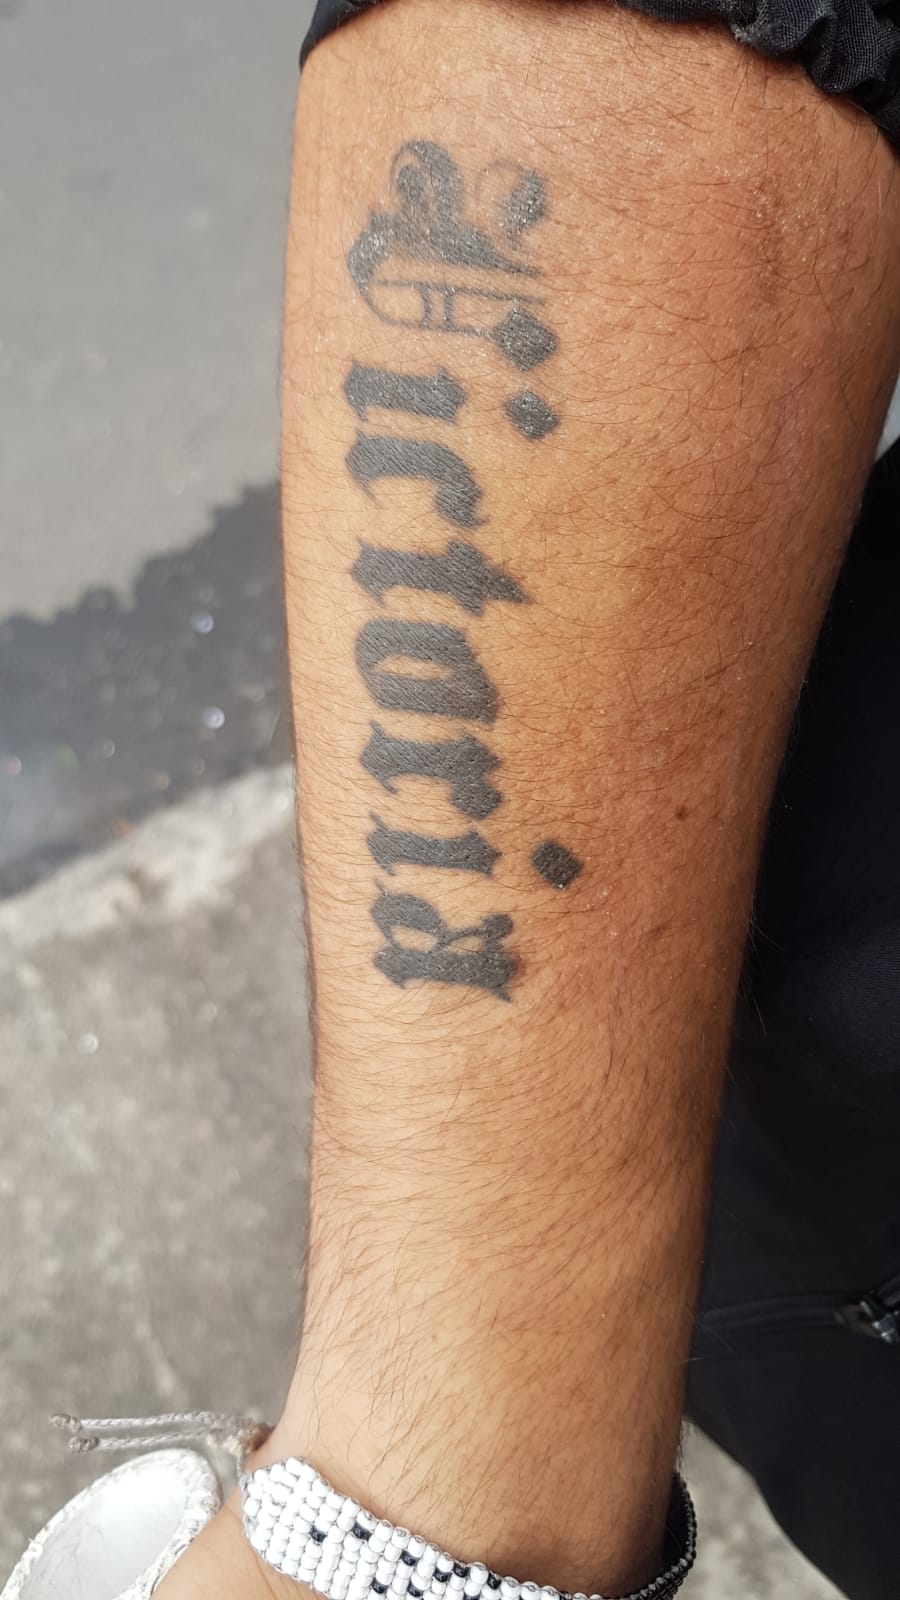 Tatuaje en brazo